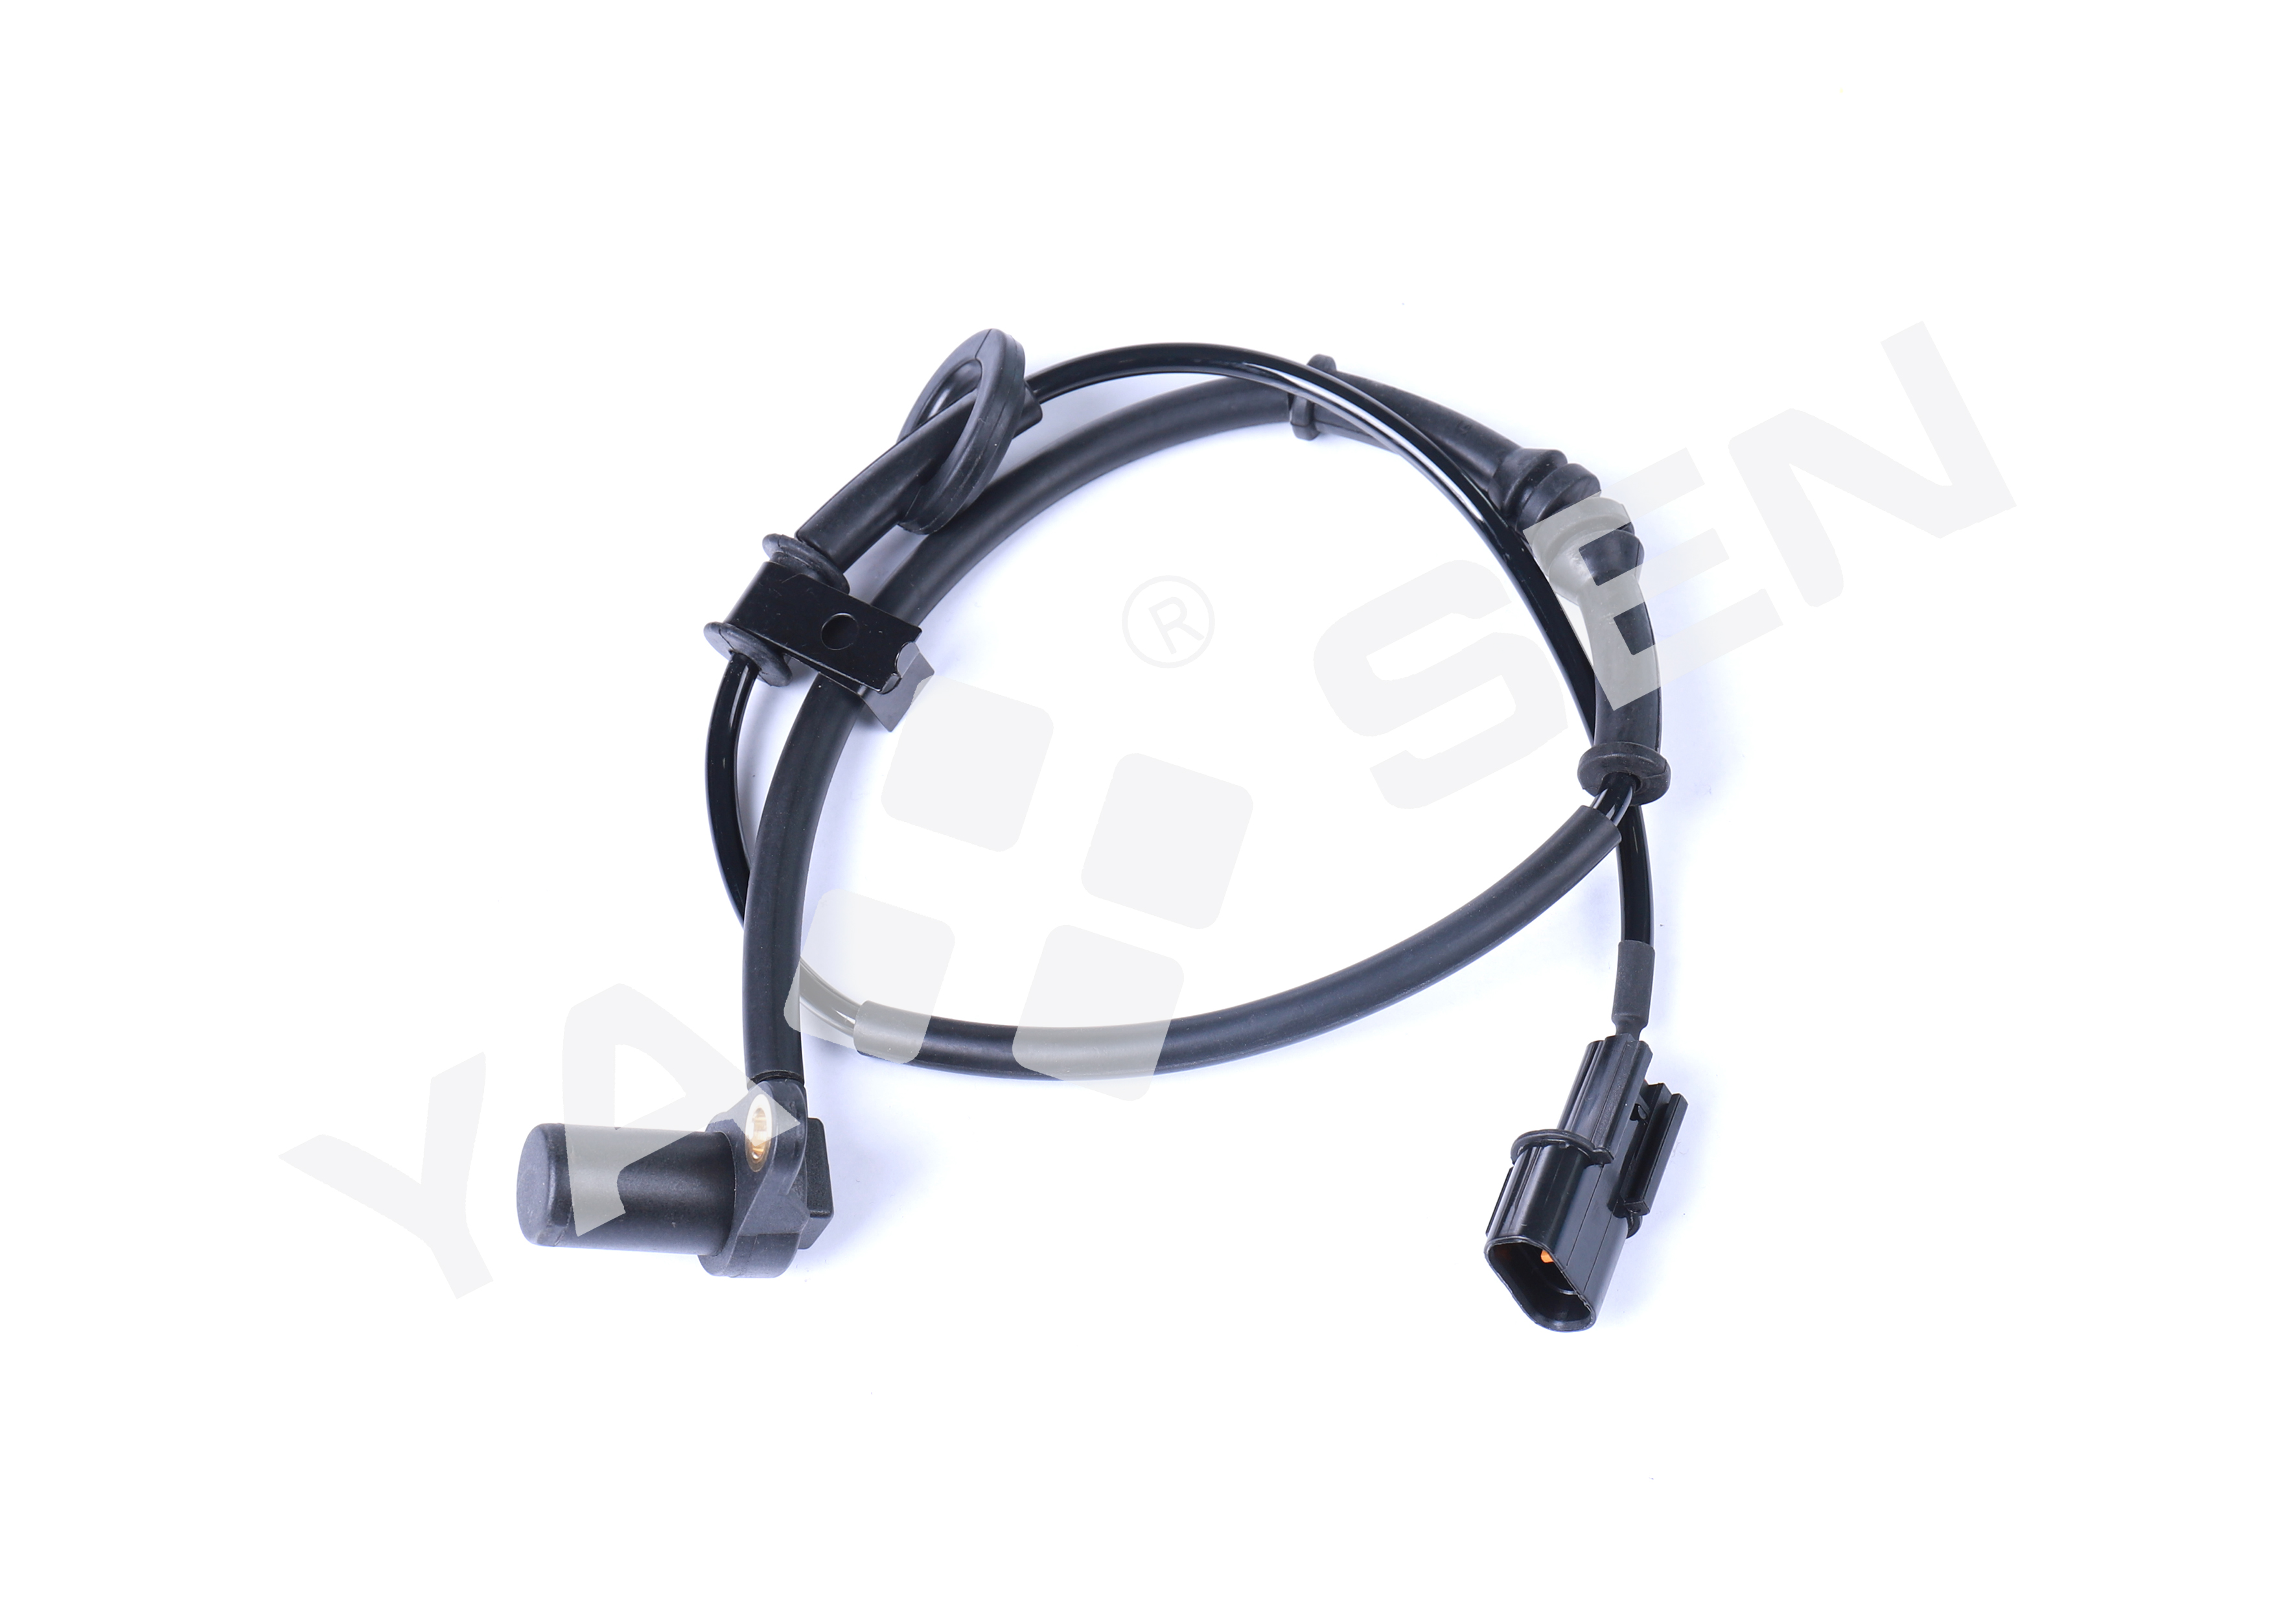 ABS Wheel Speed Sensor for KIA/HYUNDAI, 59930-2T000 2ABS0887 ALS2351 AB1008 25A5114